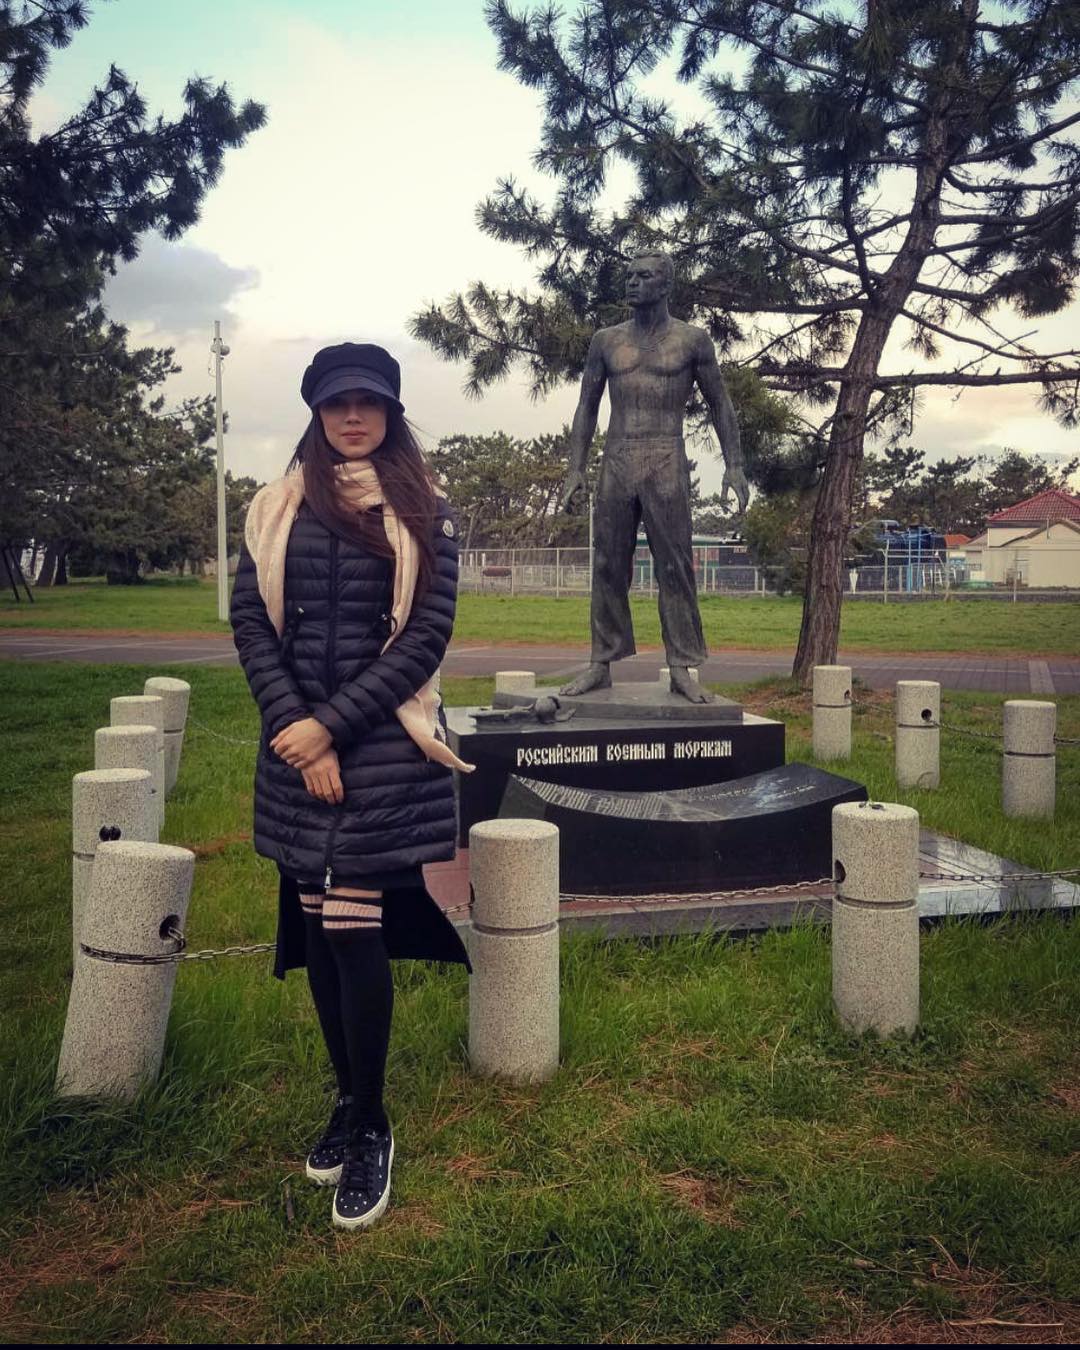 Алина Загитова поделилась новым снимком в Instagram